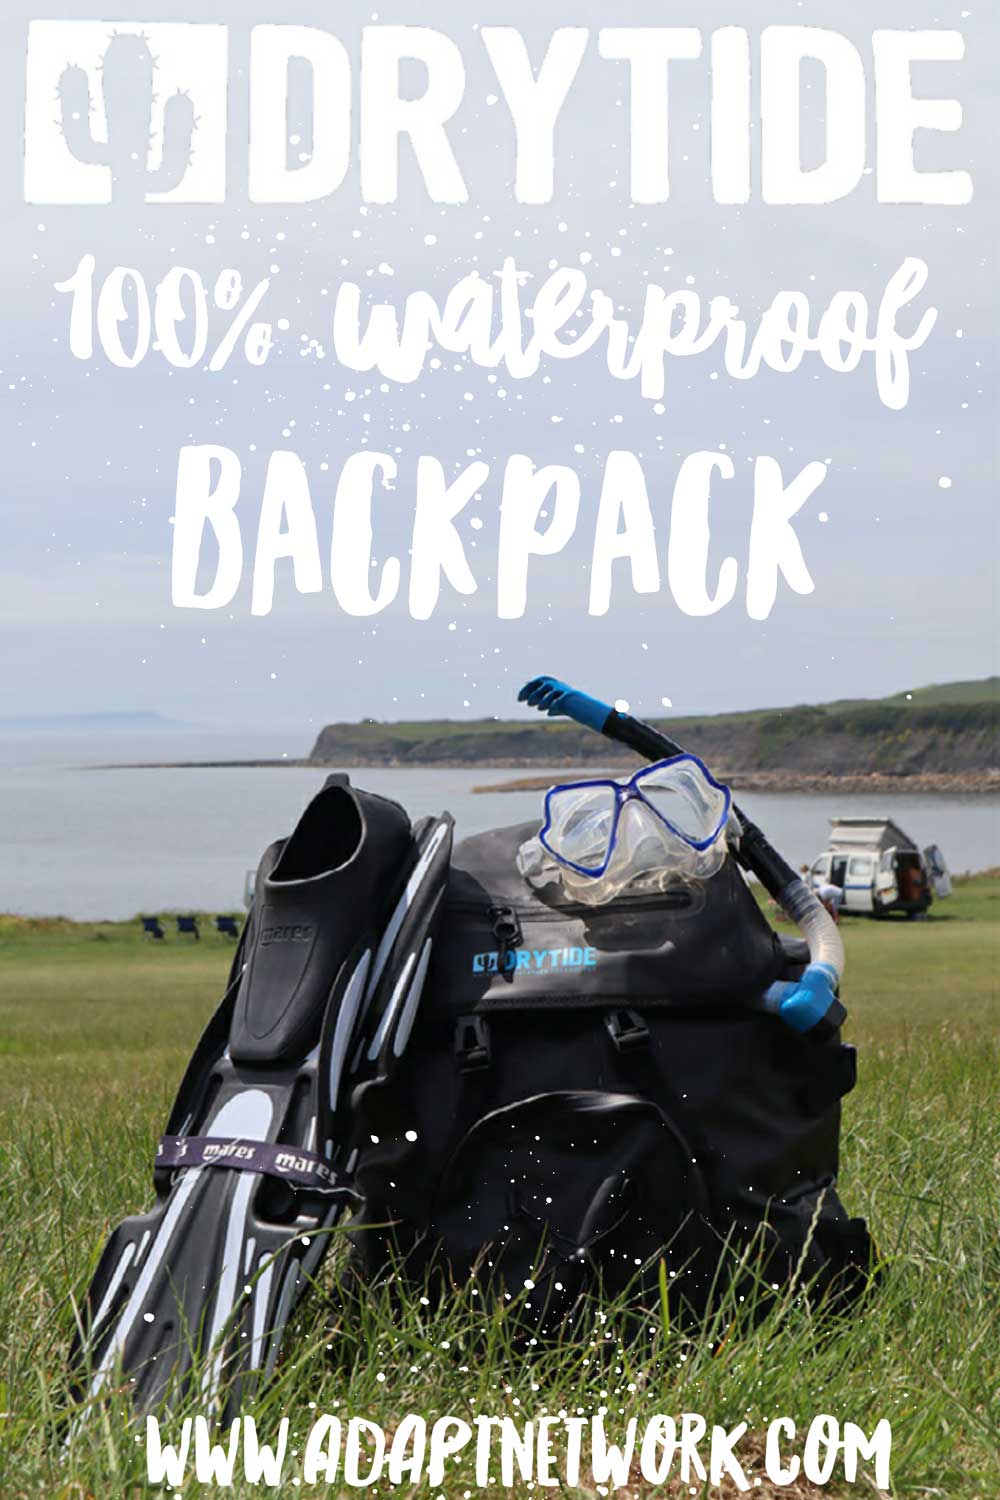 DryTide 18L Waterproof Backpack - DRYTIDE Waterproof Backpacks, Duffels and  Dry Bags